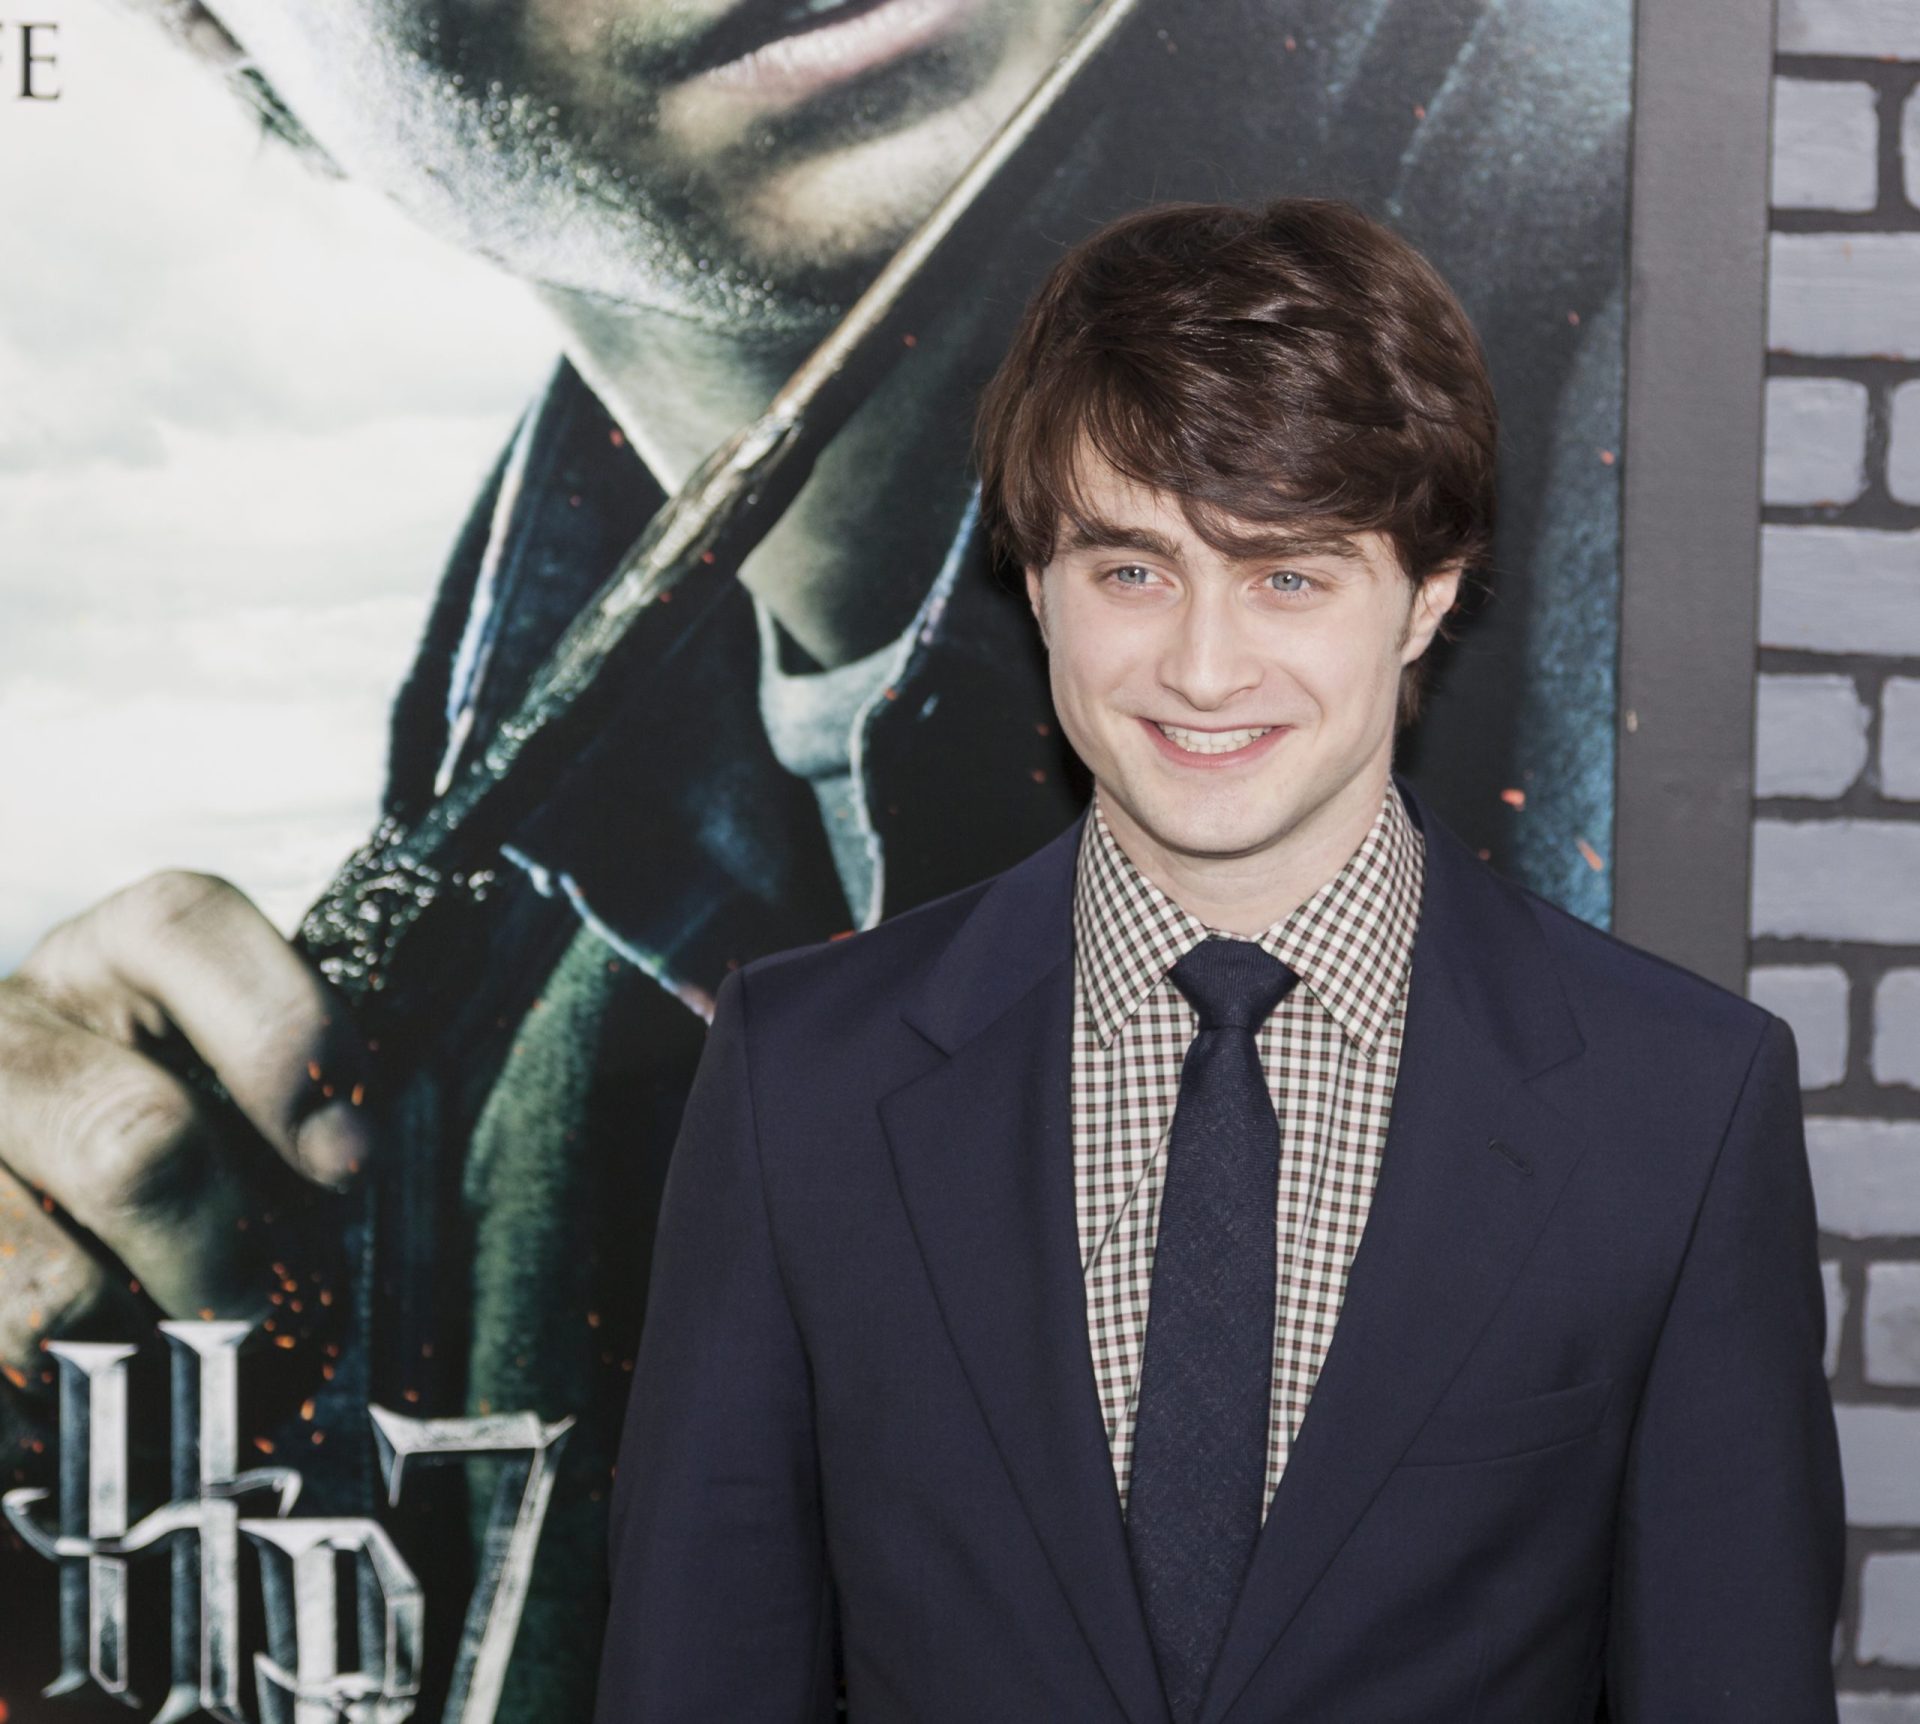 Ator de ‘Harry Potter’ revela que se refugiou no álcool para lidar com a fama | VÍDEO